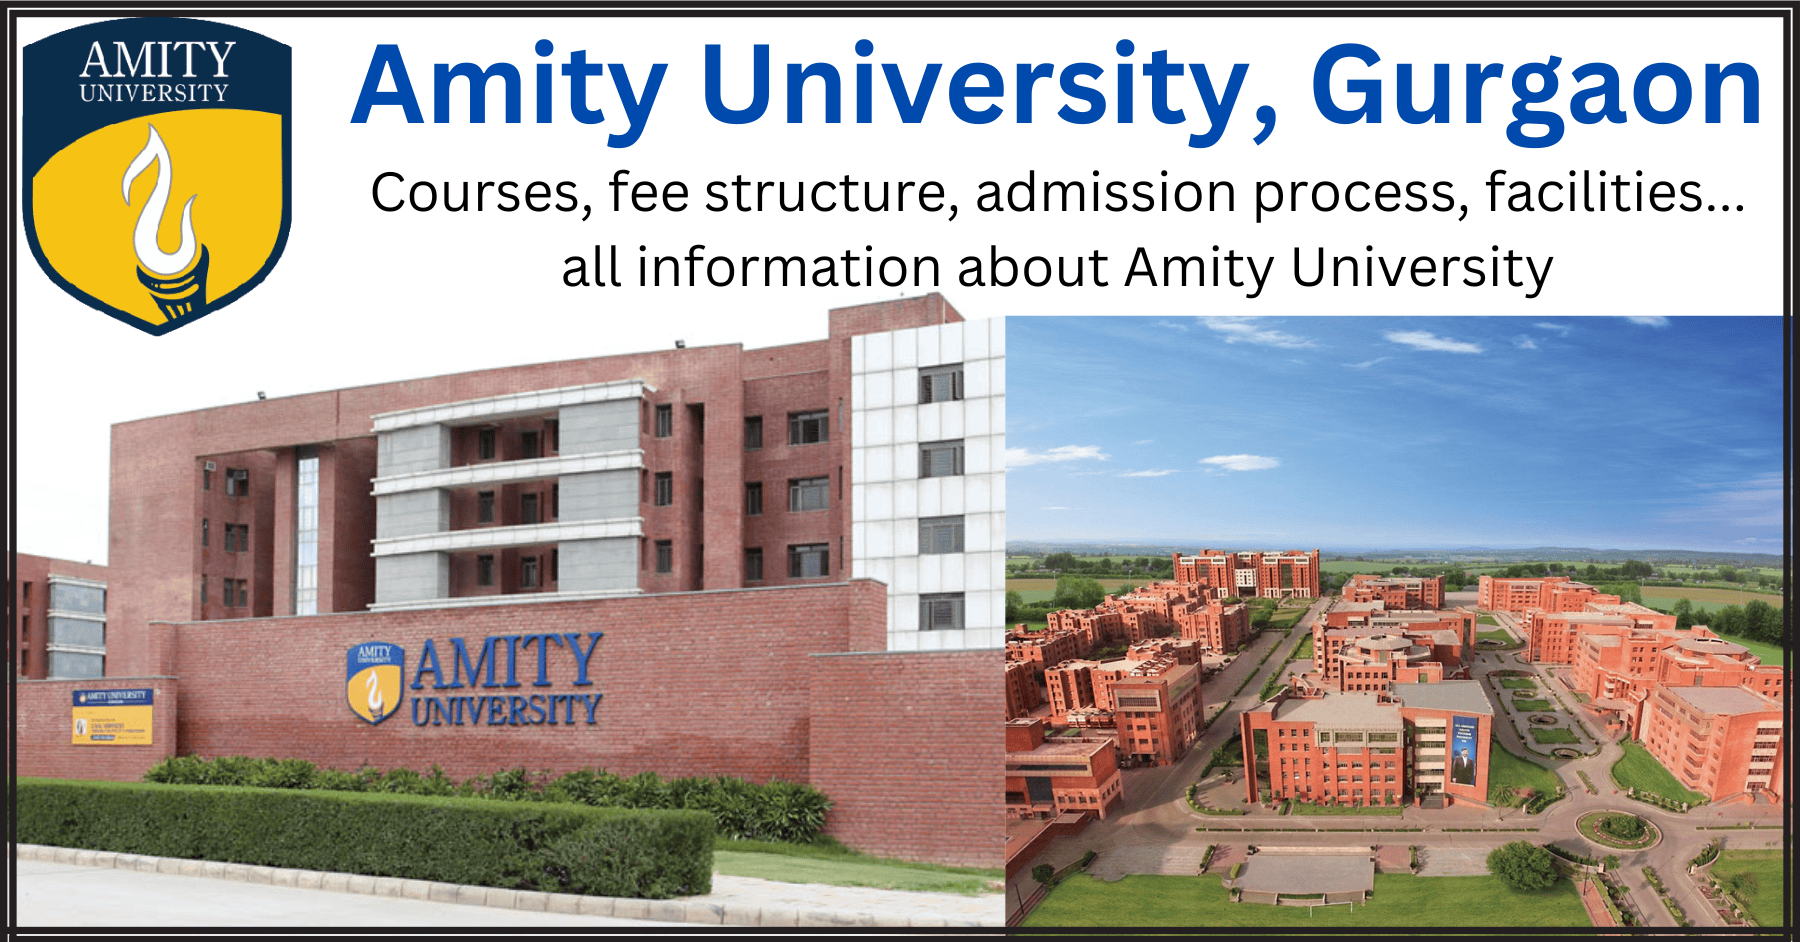 Amity-University-Gurgaon